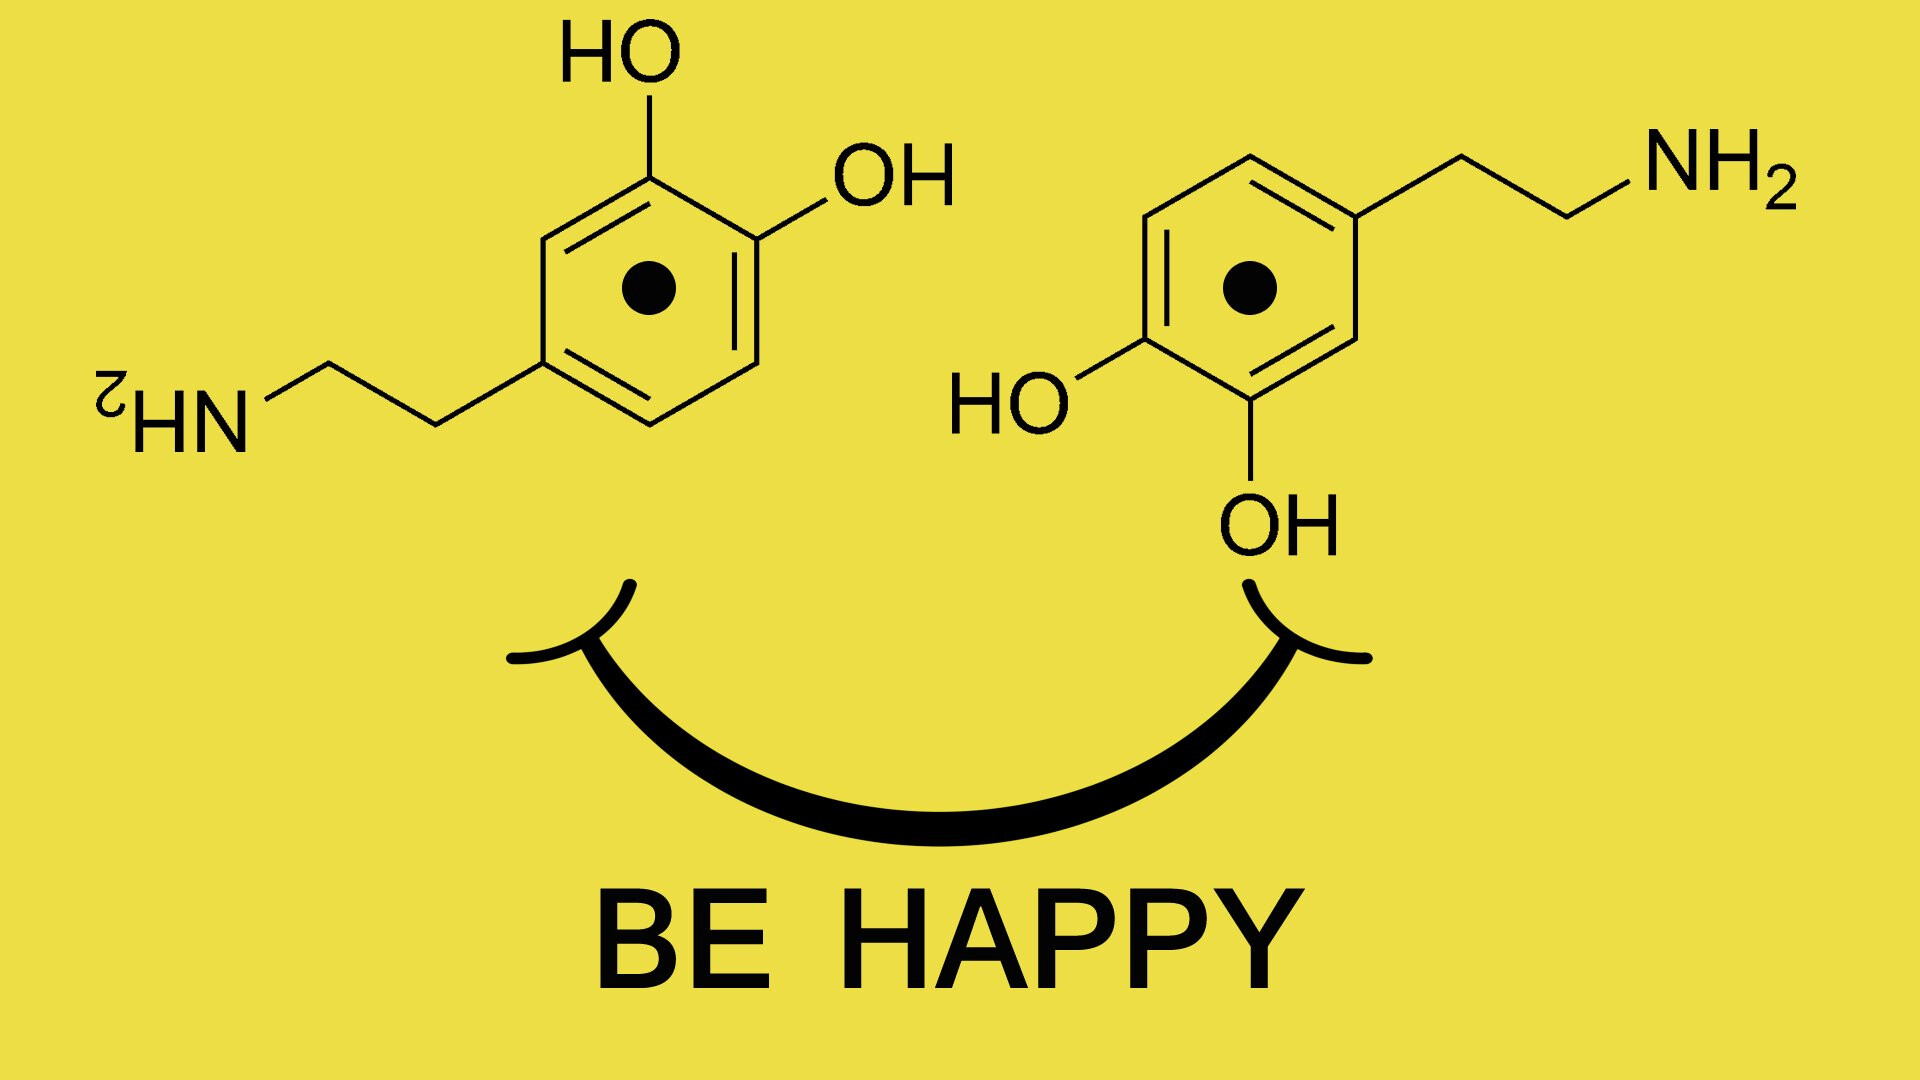 Формула эндорфина. Гормон счастья дофамин формула. Дофамин гормон формула. Формула дофамина химия. Гормон счастья формула химическая.